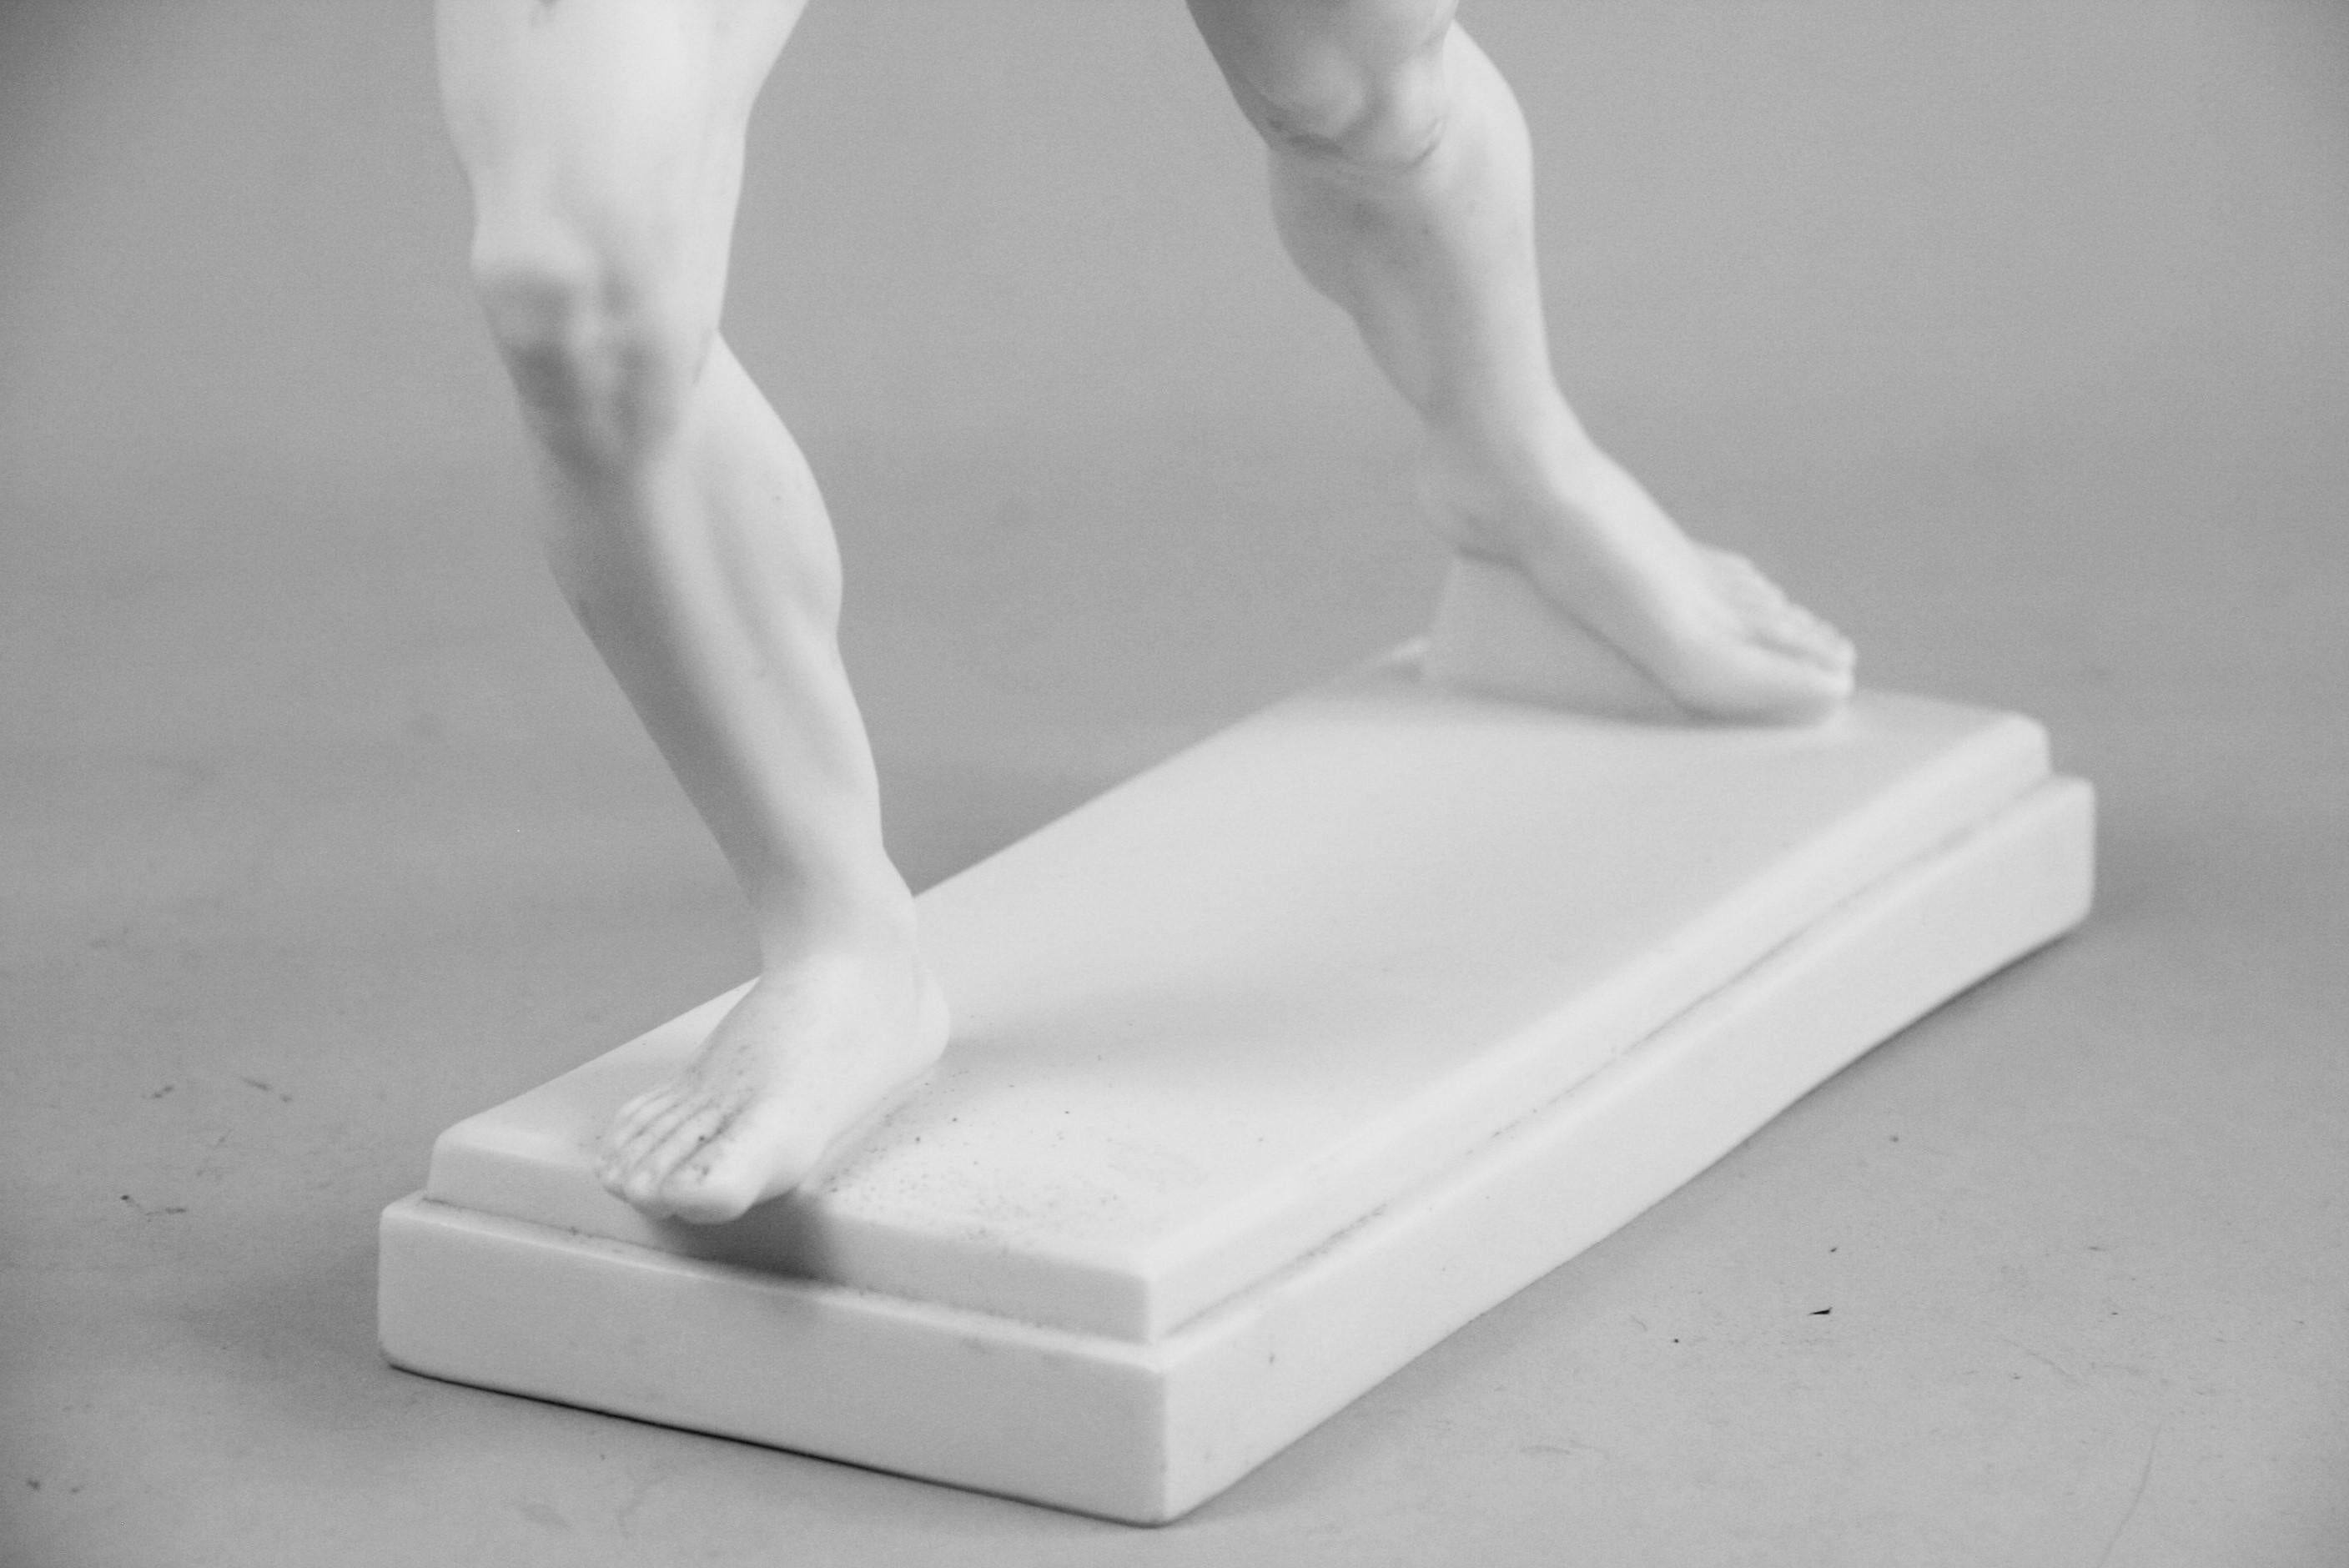 Nude Classical Greek Runner Sculpture 2